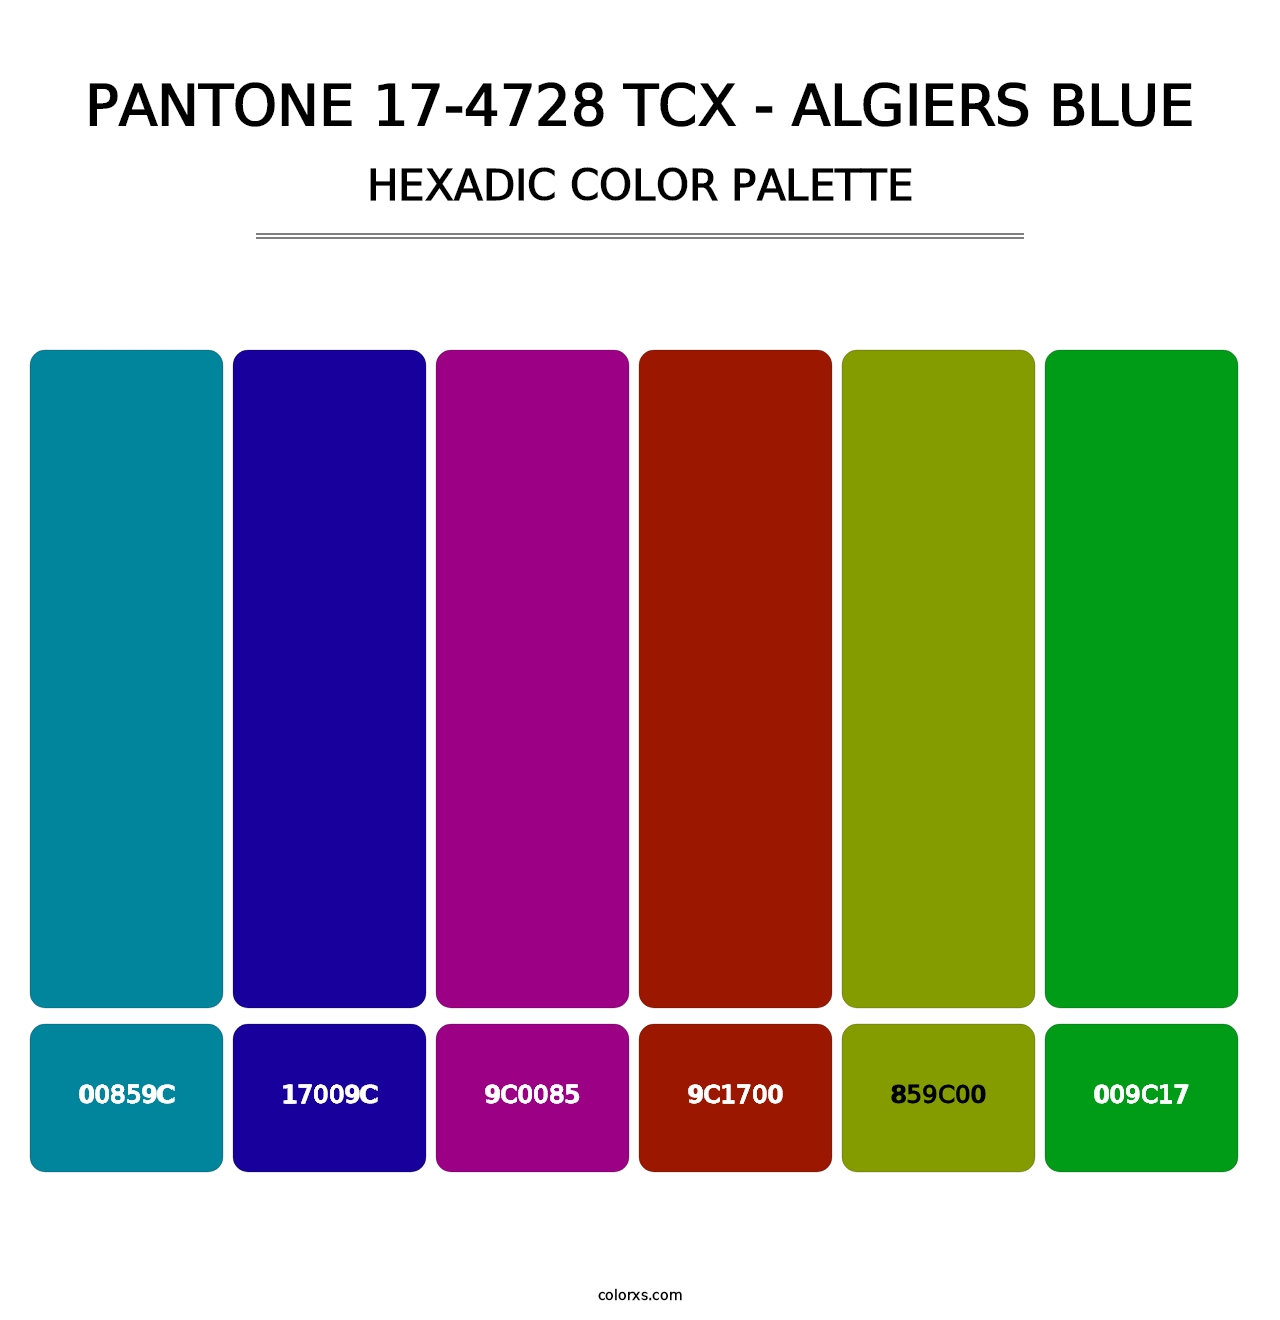 PANTONE 17-4728 TCX - Algiers Blue - Hexadic Color Palette